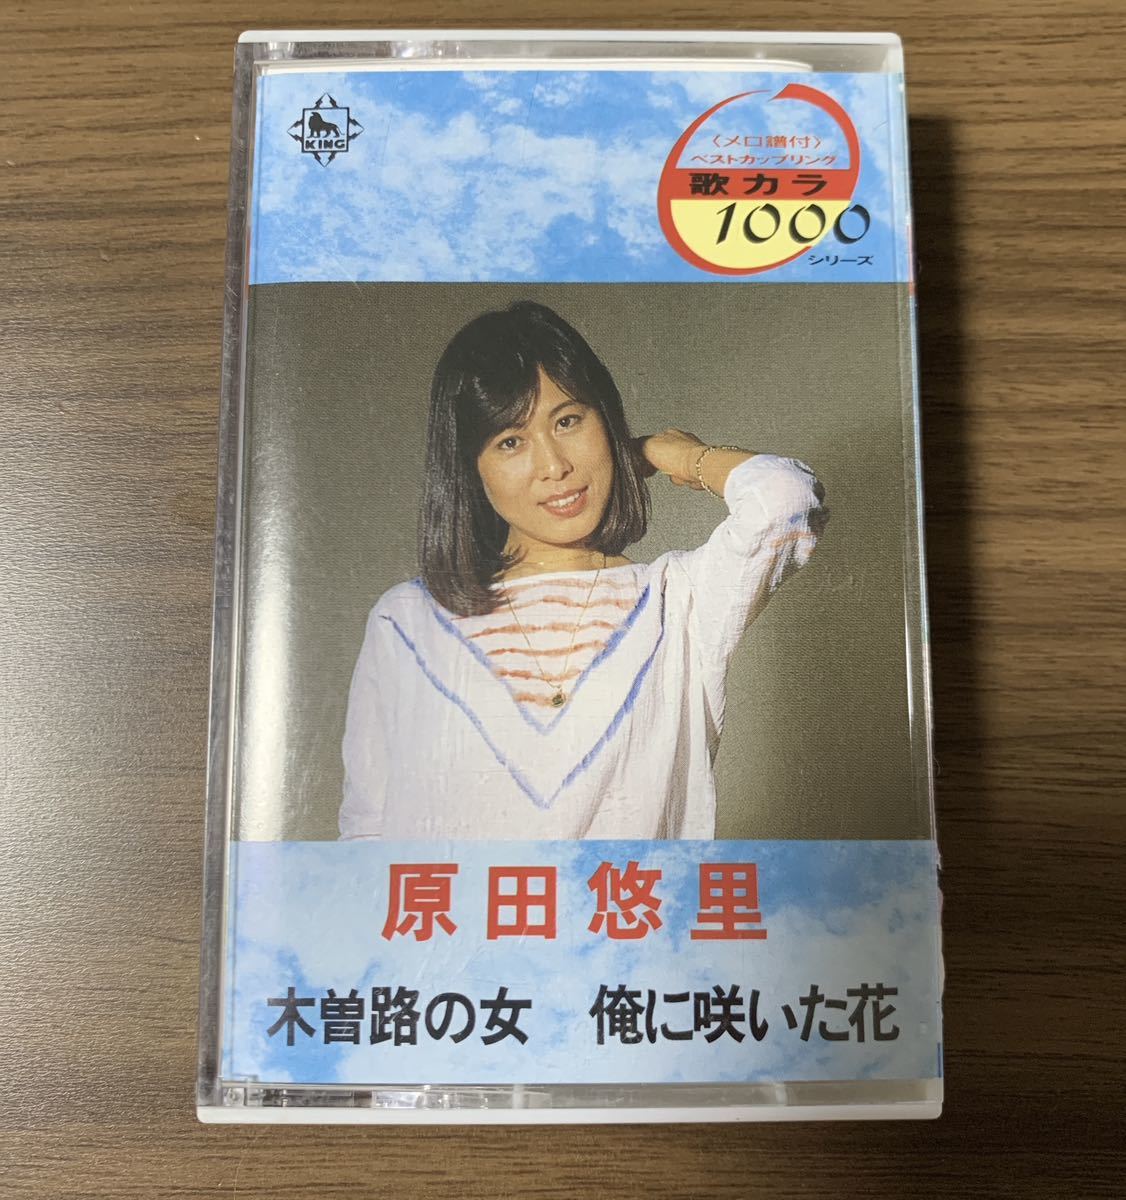 ◆原田悠里 「木曽路の女」「俺に咲いた花」/ カセットテープ/1990年◆KISX 2018の画像1